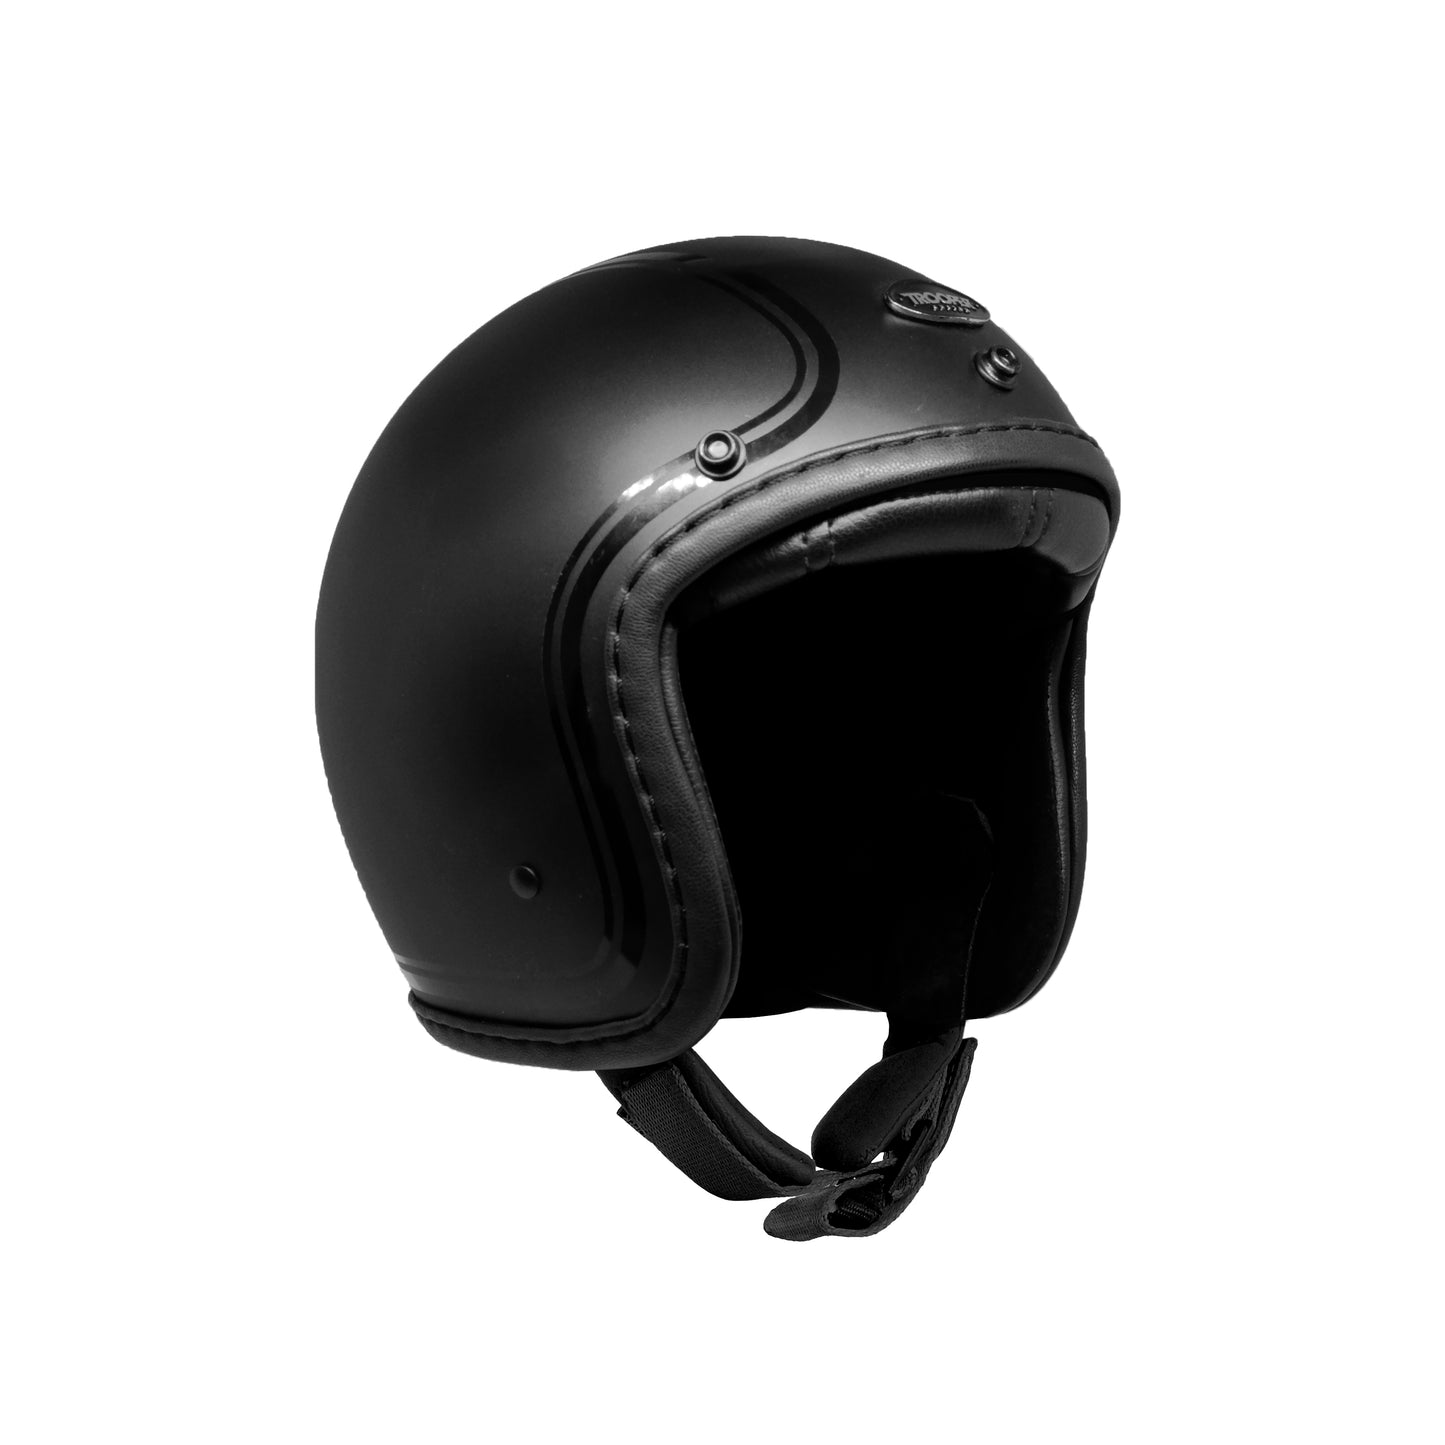 Smokey Black Edition Helmet - Special Edition